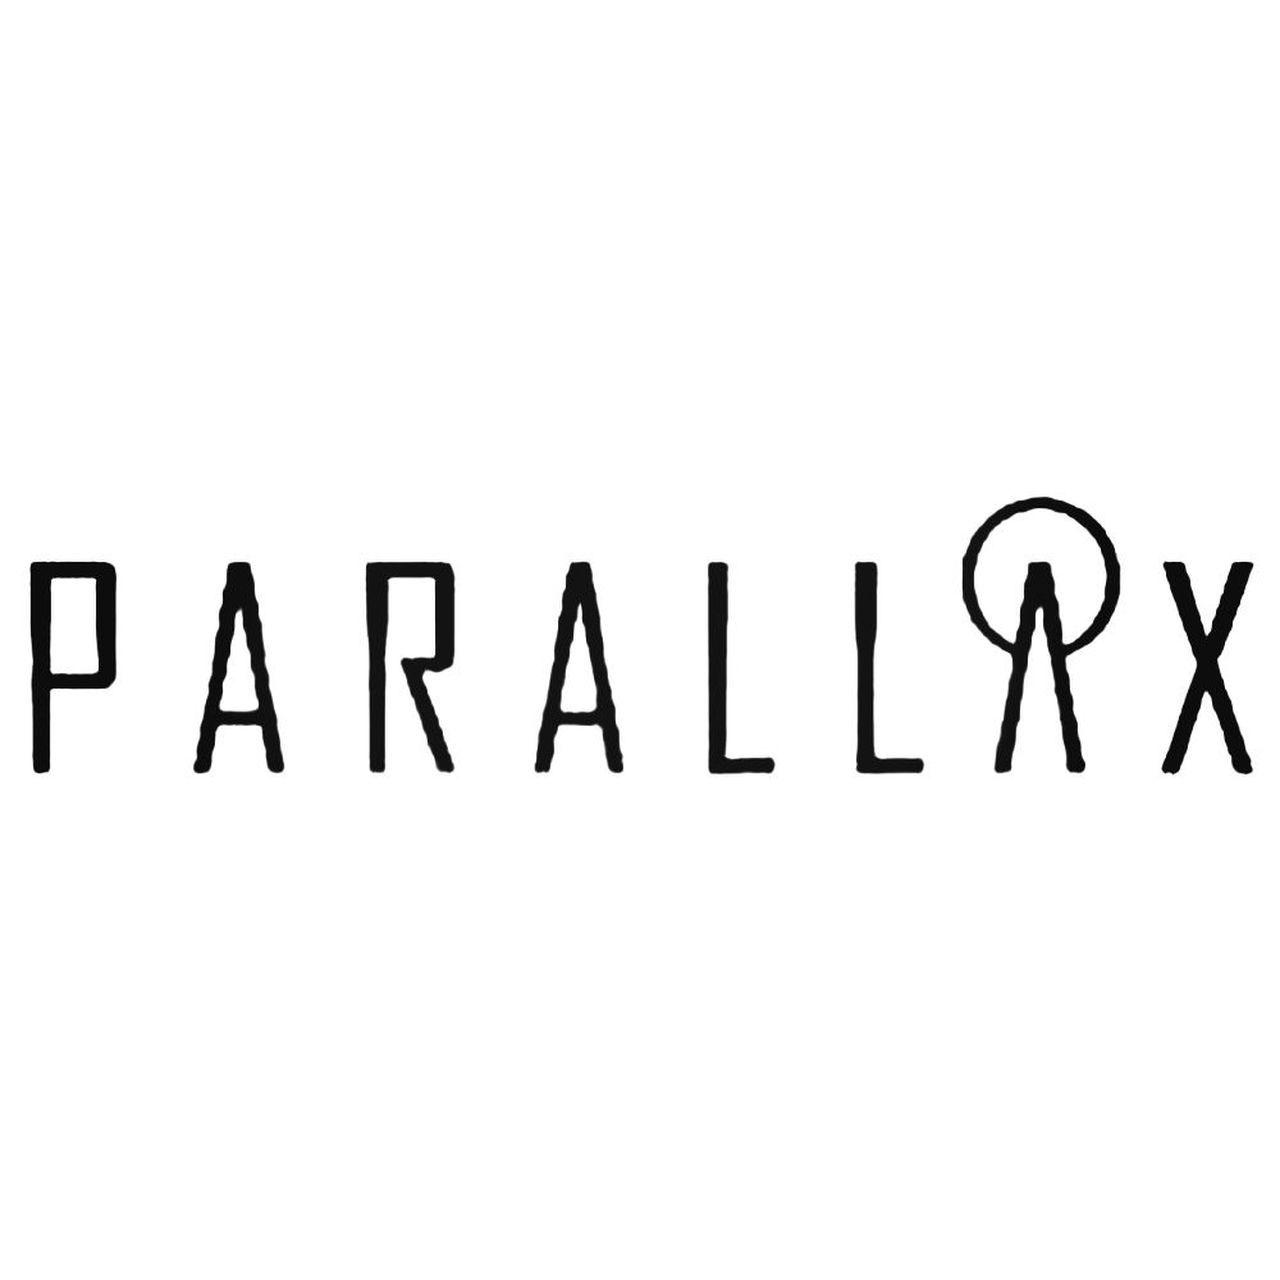 Parallax Logo - Parallax Uk Band Decal Sticker